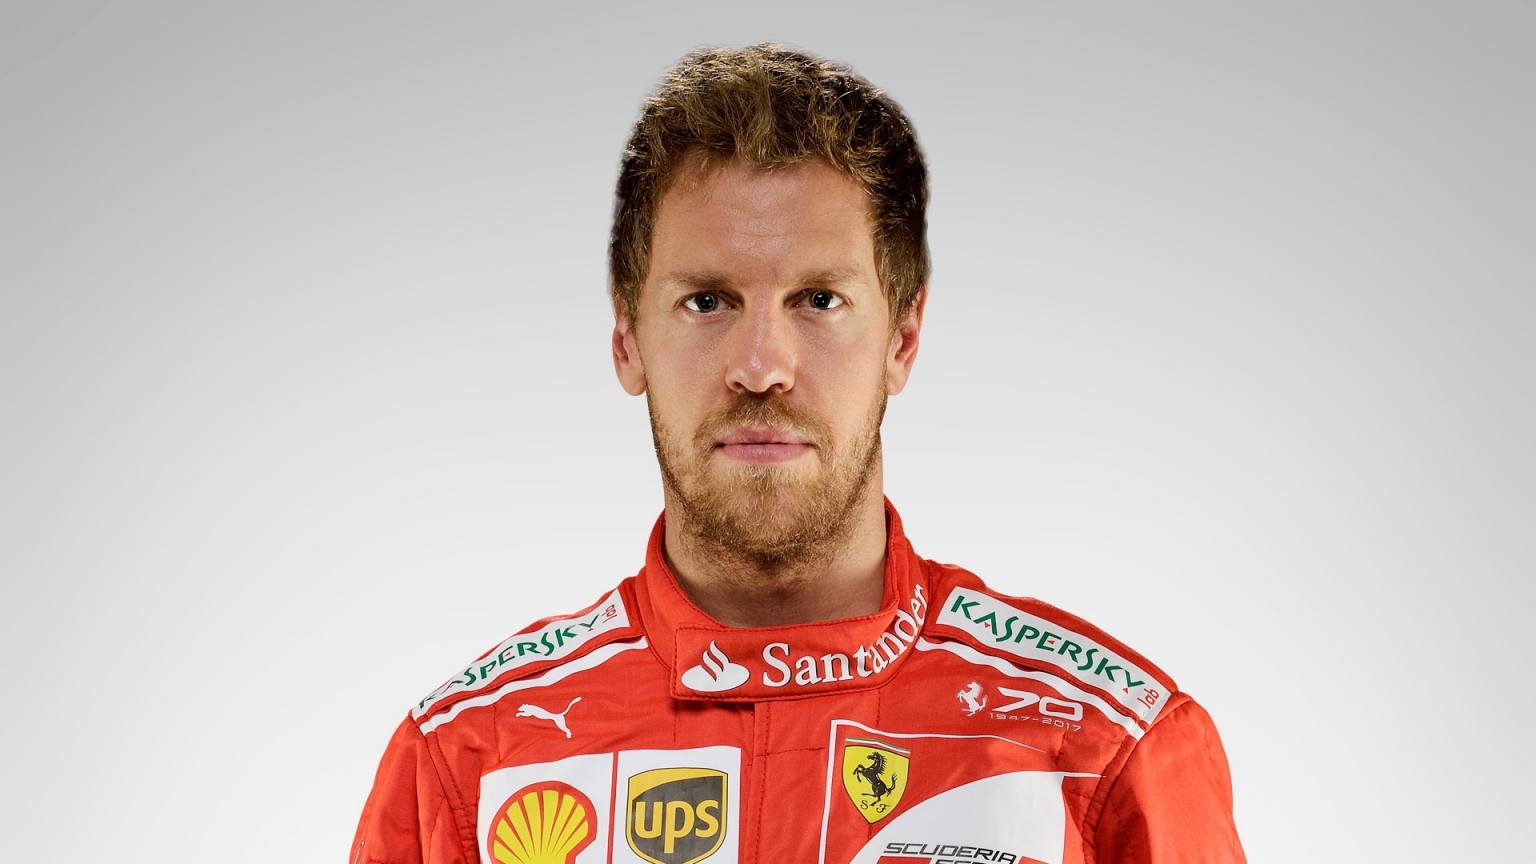 Sebastian Vettel là tay đua F1 người Đức của đội Scuderia Ferrari ( Nguồn: signalng.com)